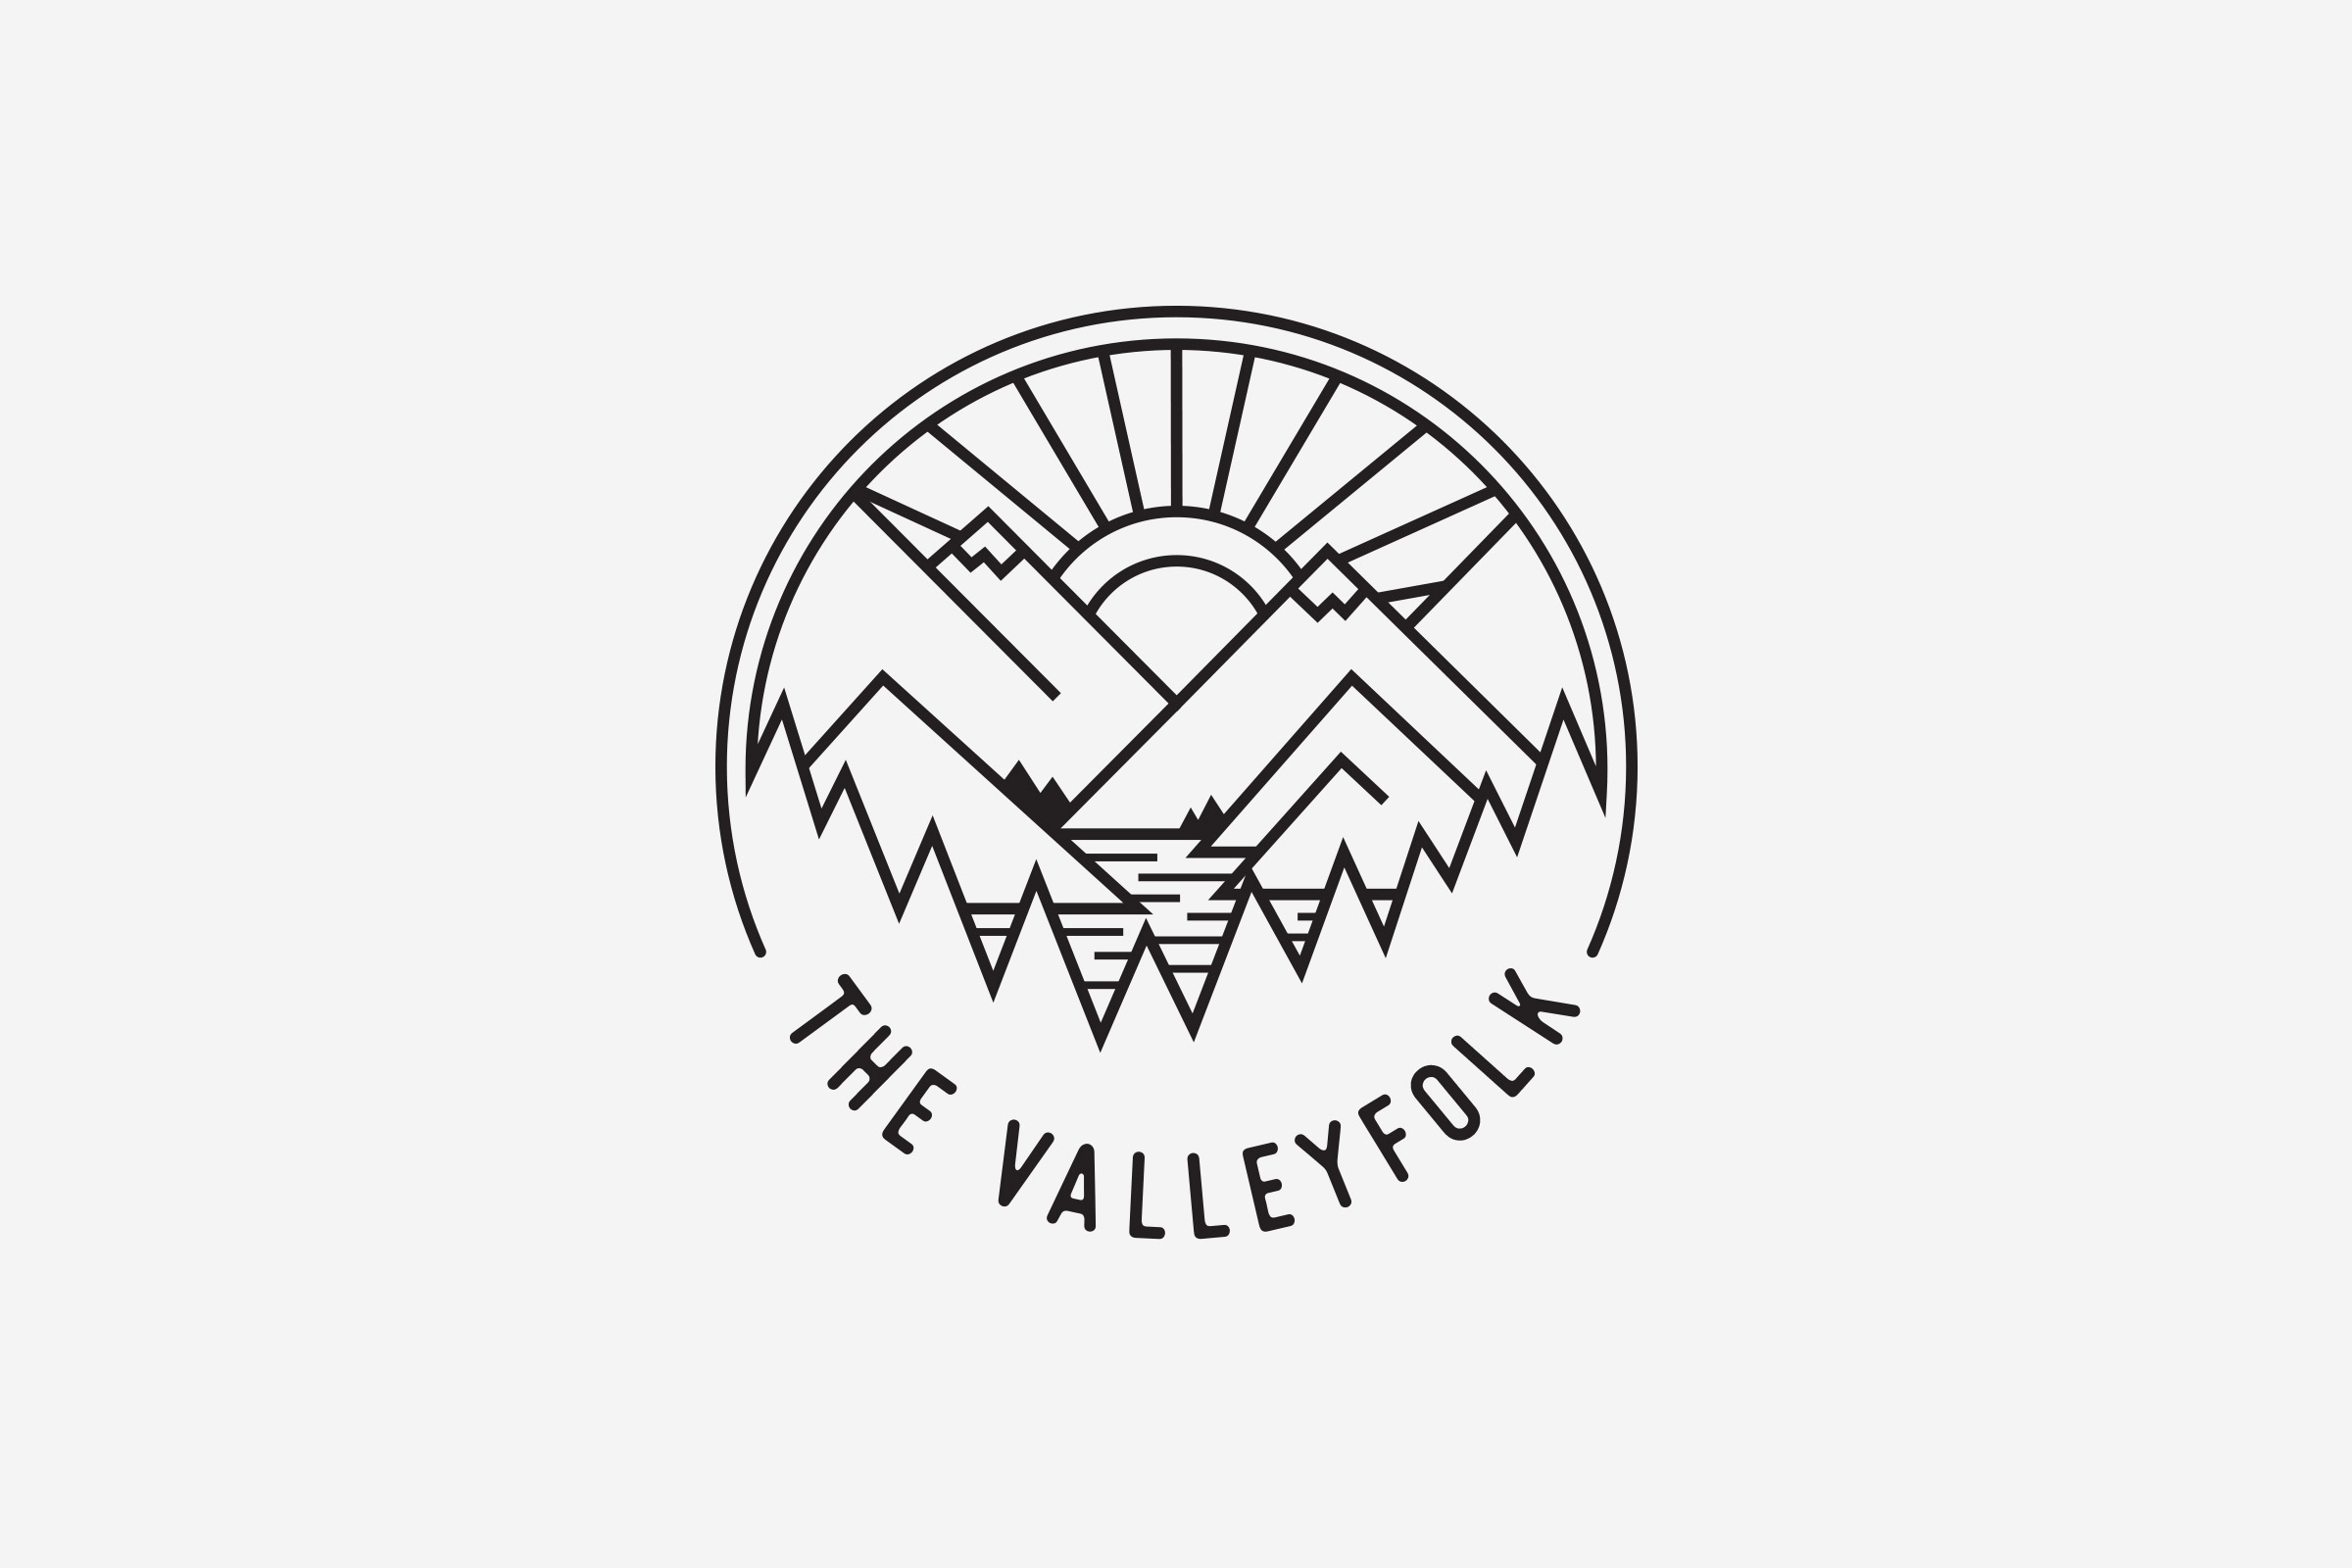 The Valleyfolk